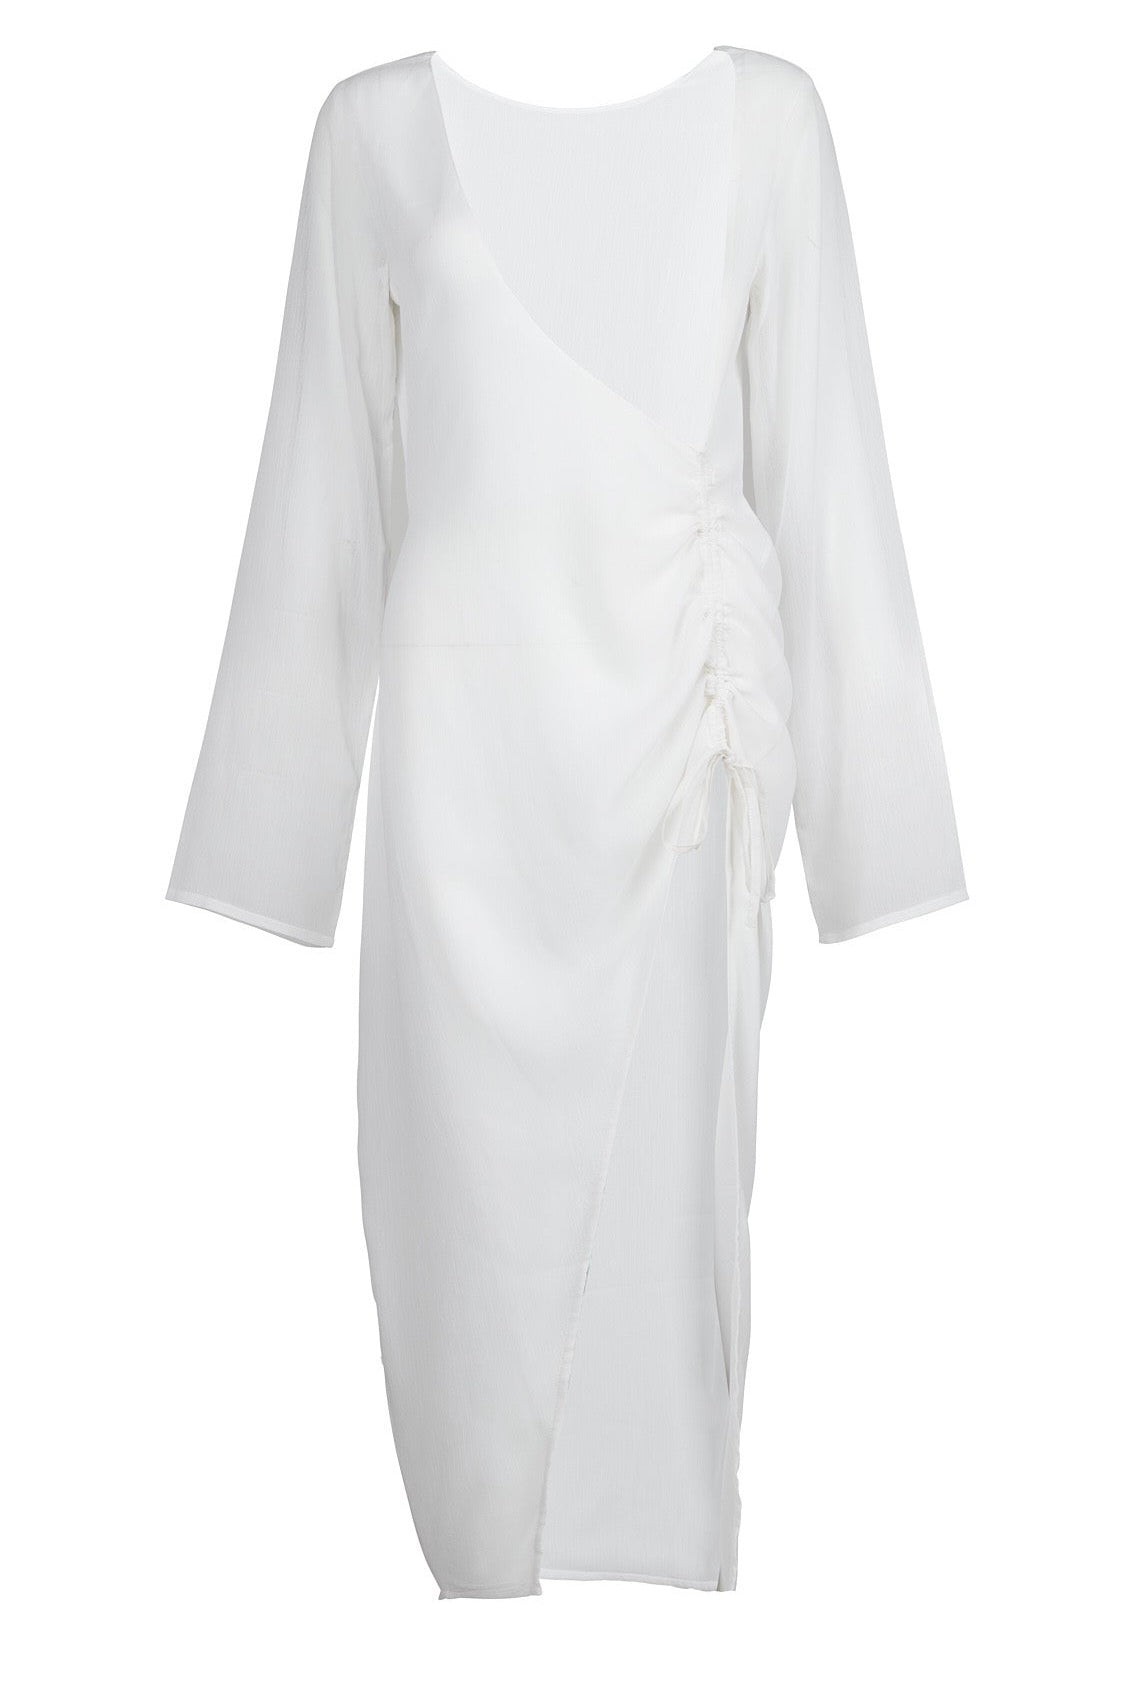 שמלת הוואי צבע לבן - HAWAII DRESS COLOR WHITE